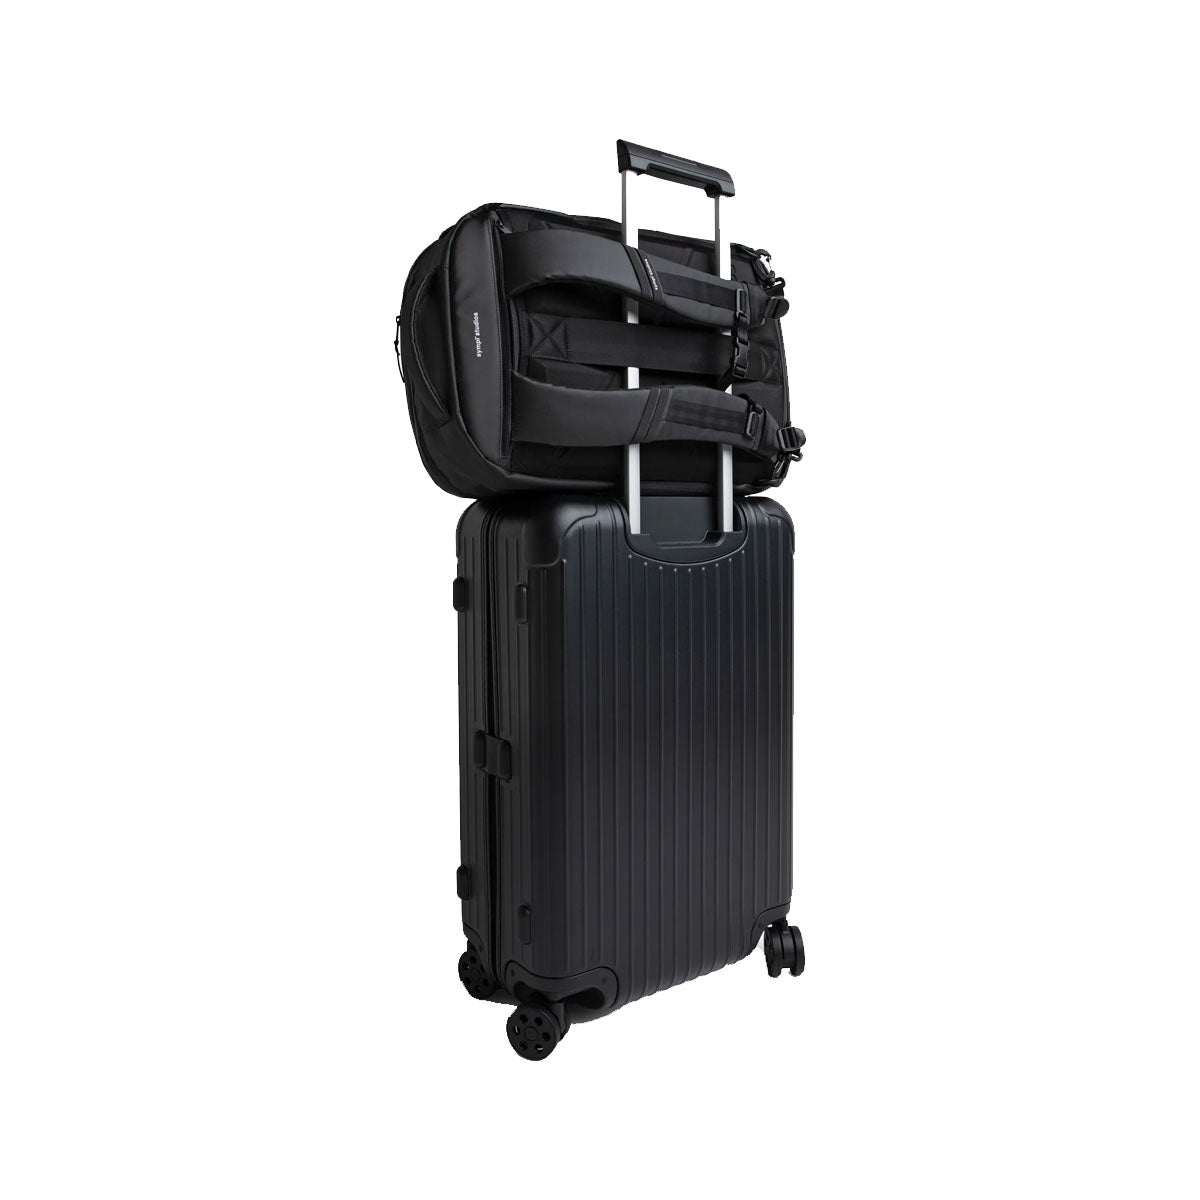 [PO] Sympl : Travel Backpack 35L